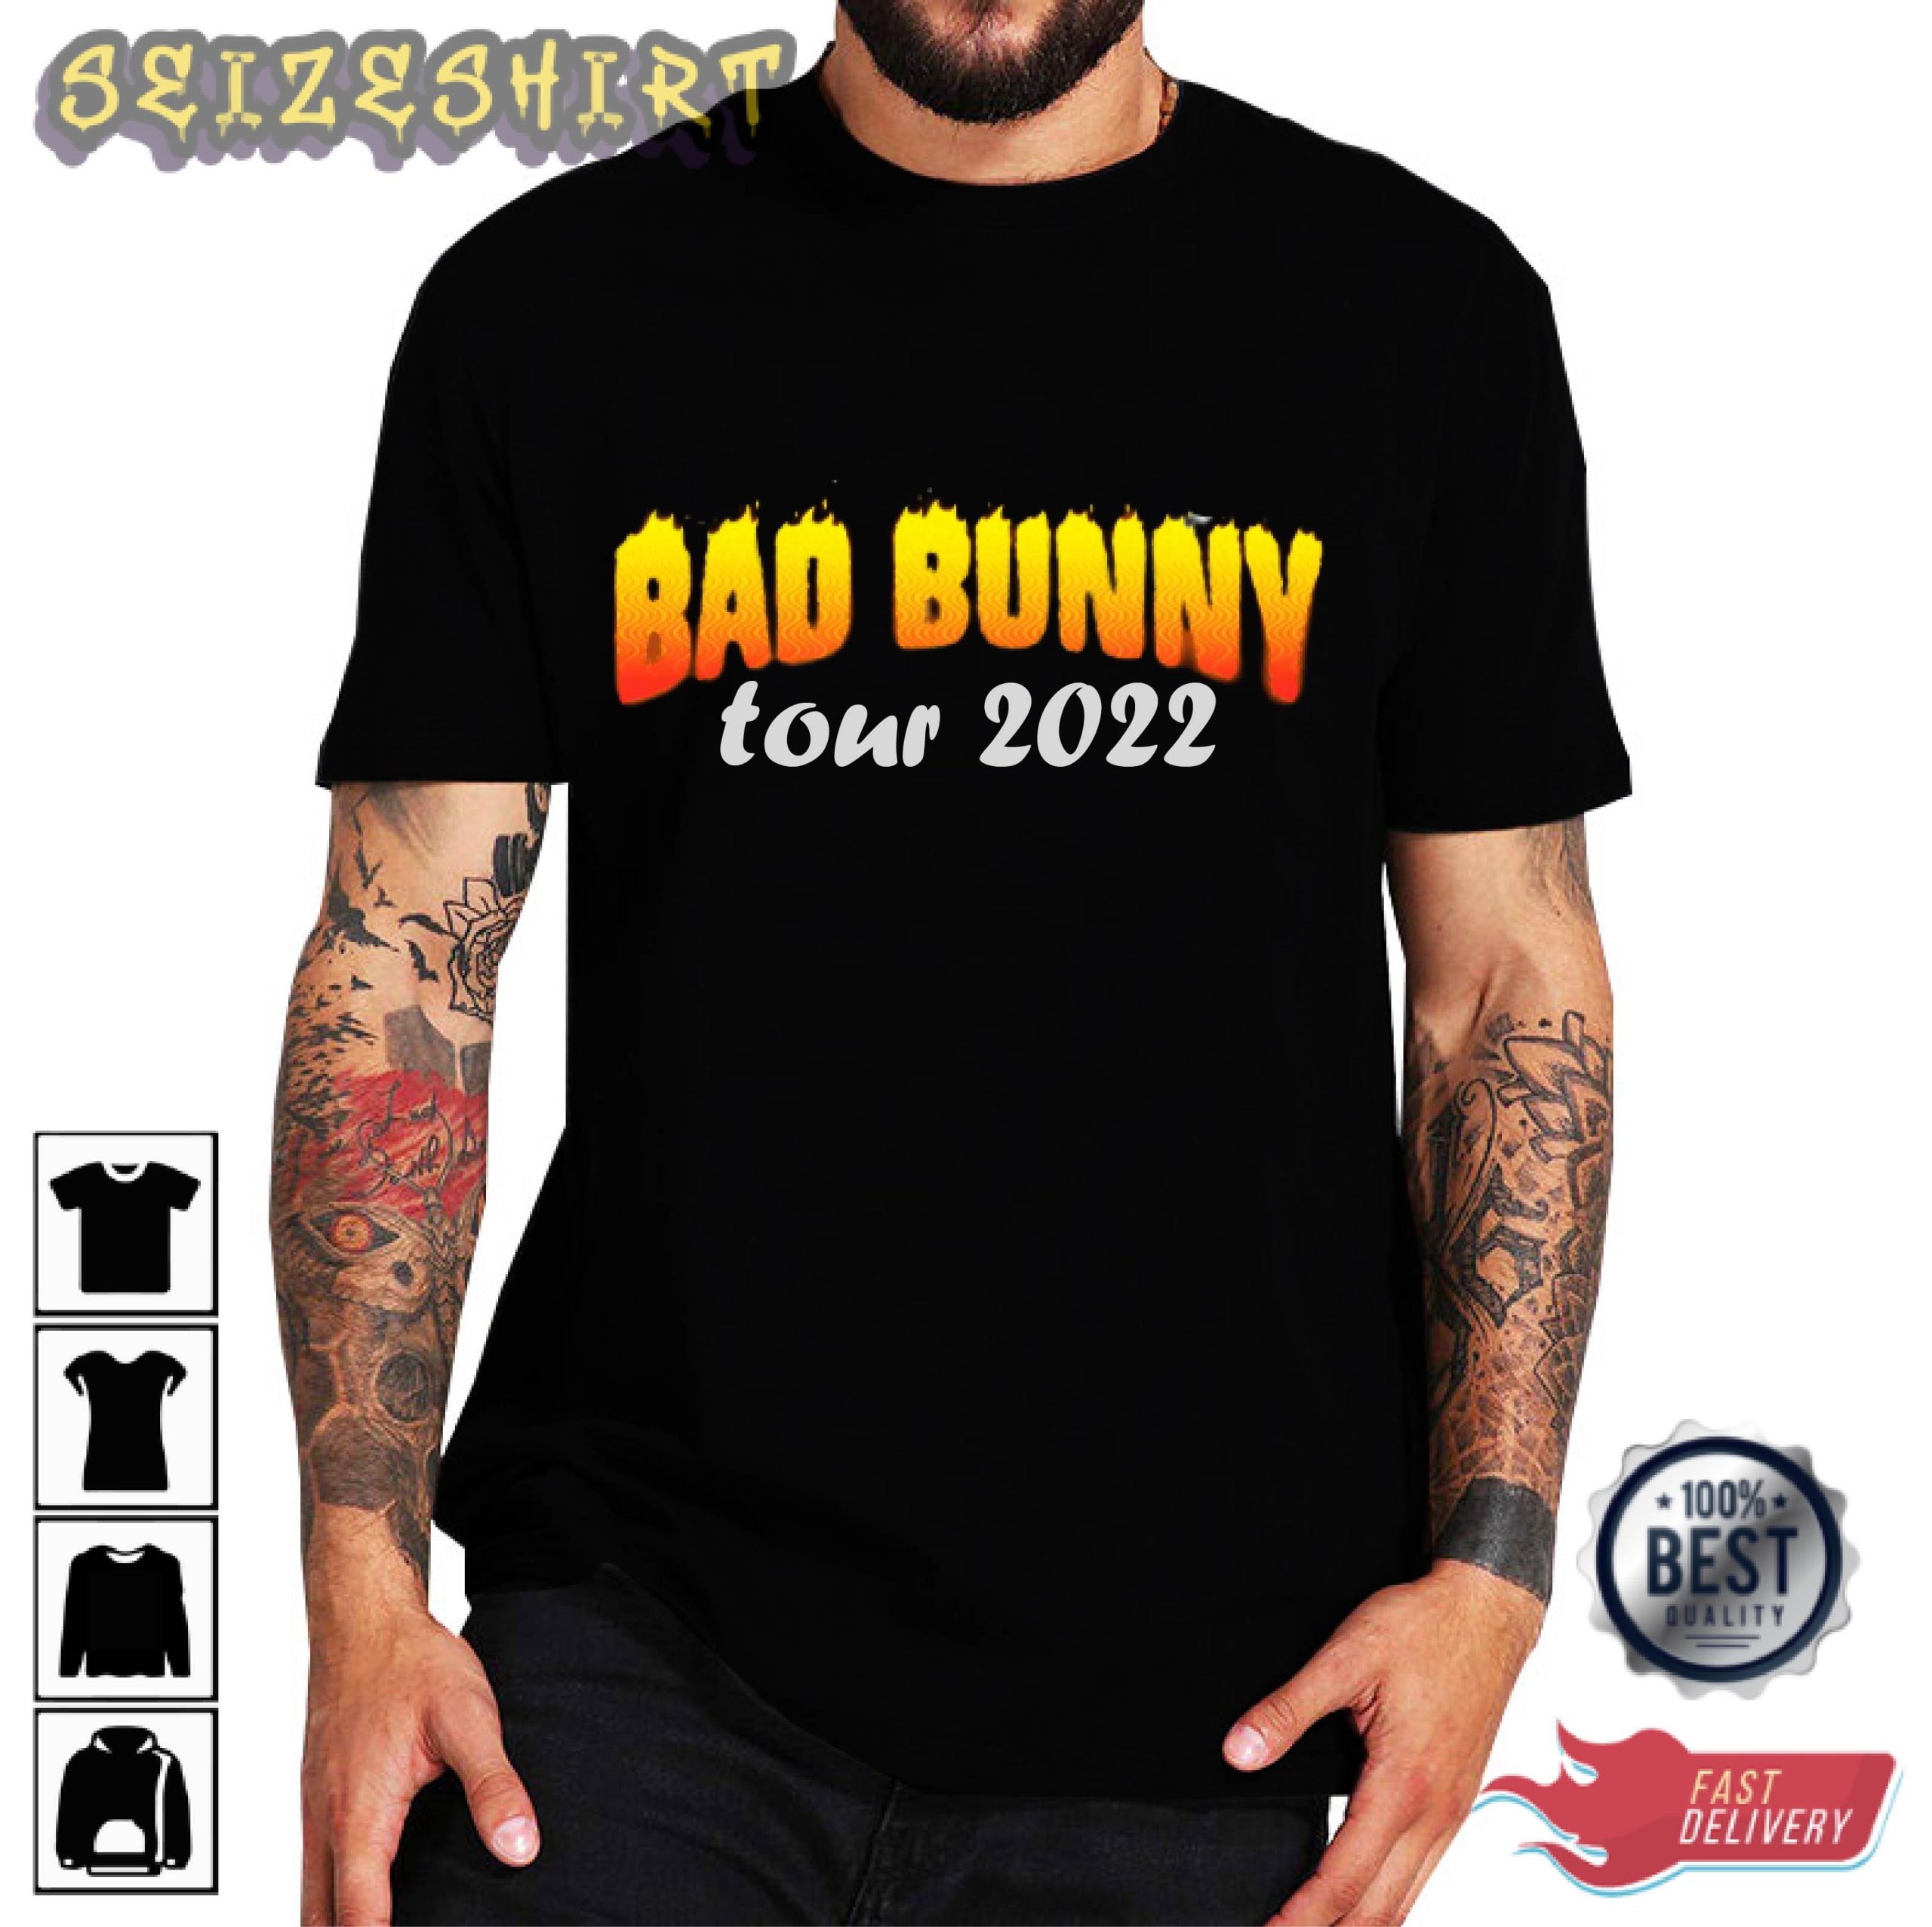 Bad Bunny Tour 2022 Merch Shirt